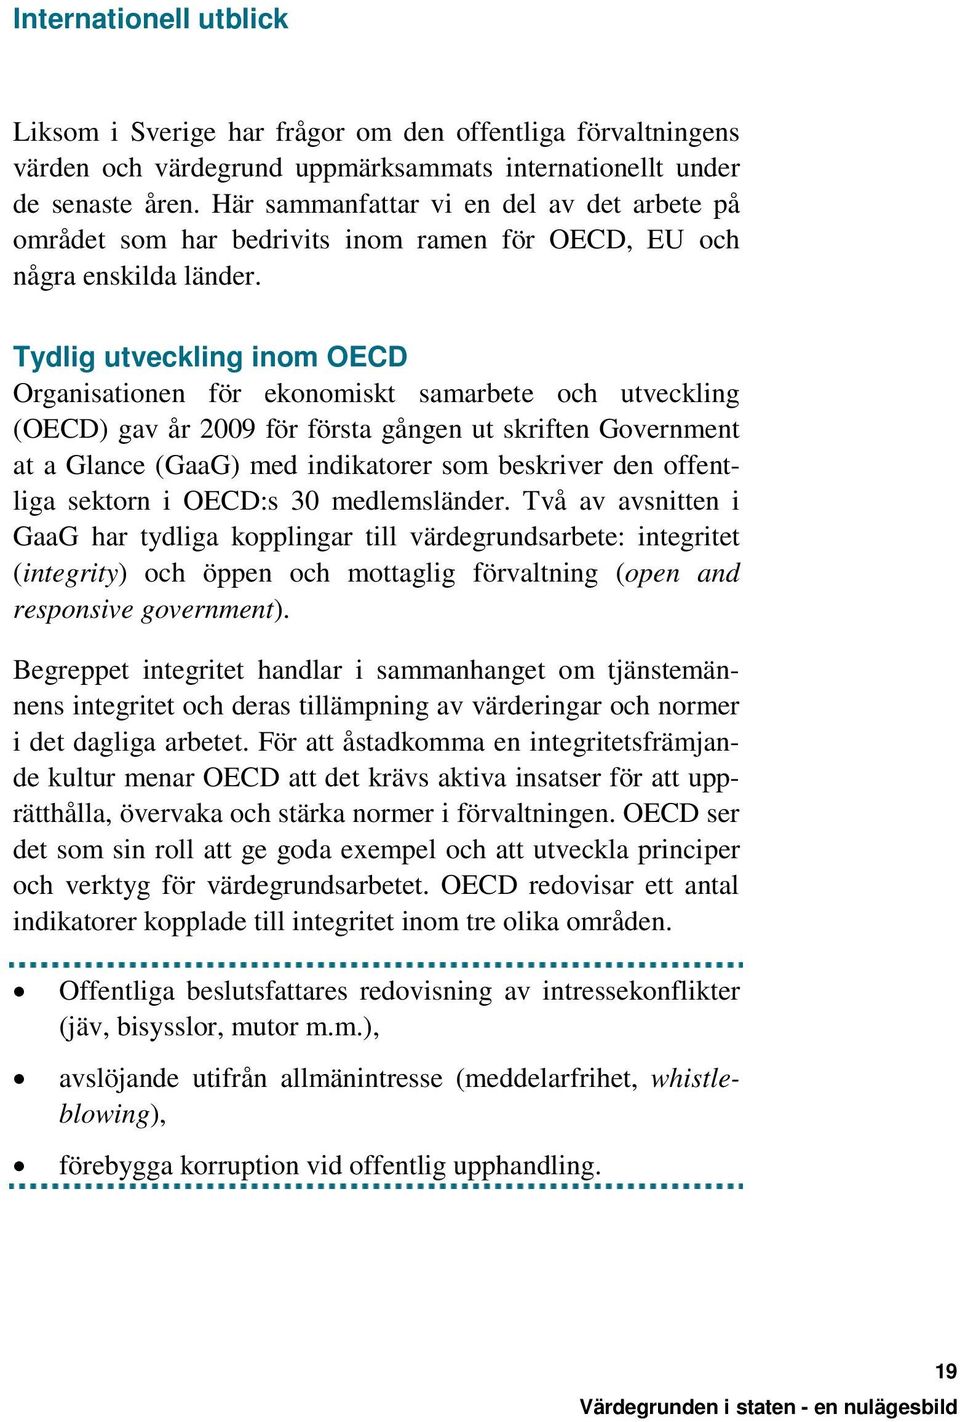 Tydlig utveckling inom OECD Organisationen för ekonomiskt samarbete och utveckling (OECD) gav år 2009 för första gången ut skriften Government at a Glance (GaaG) med indikatorer som beskriver den